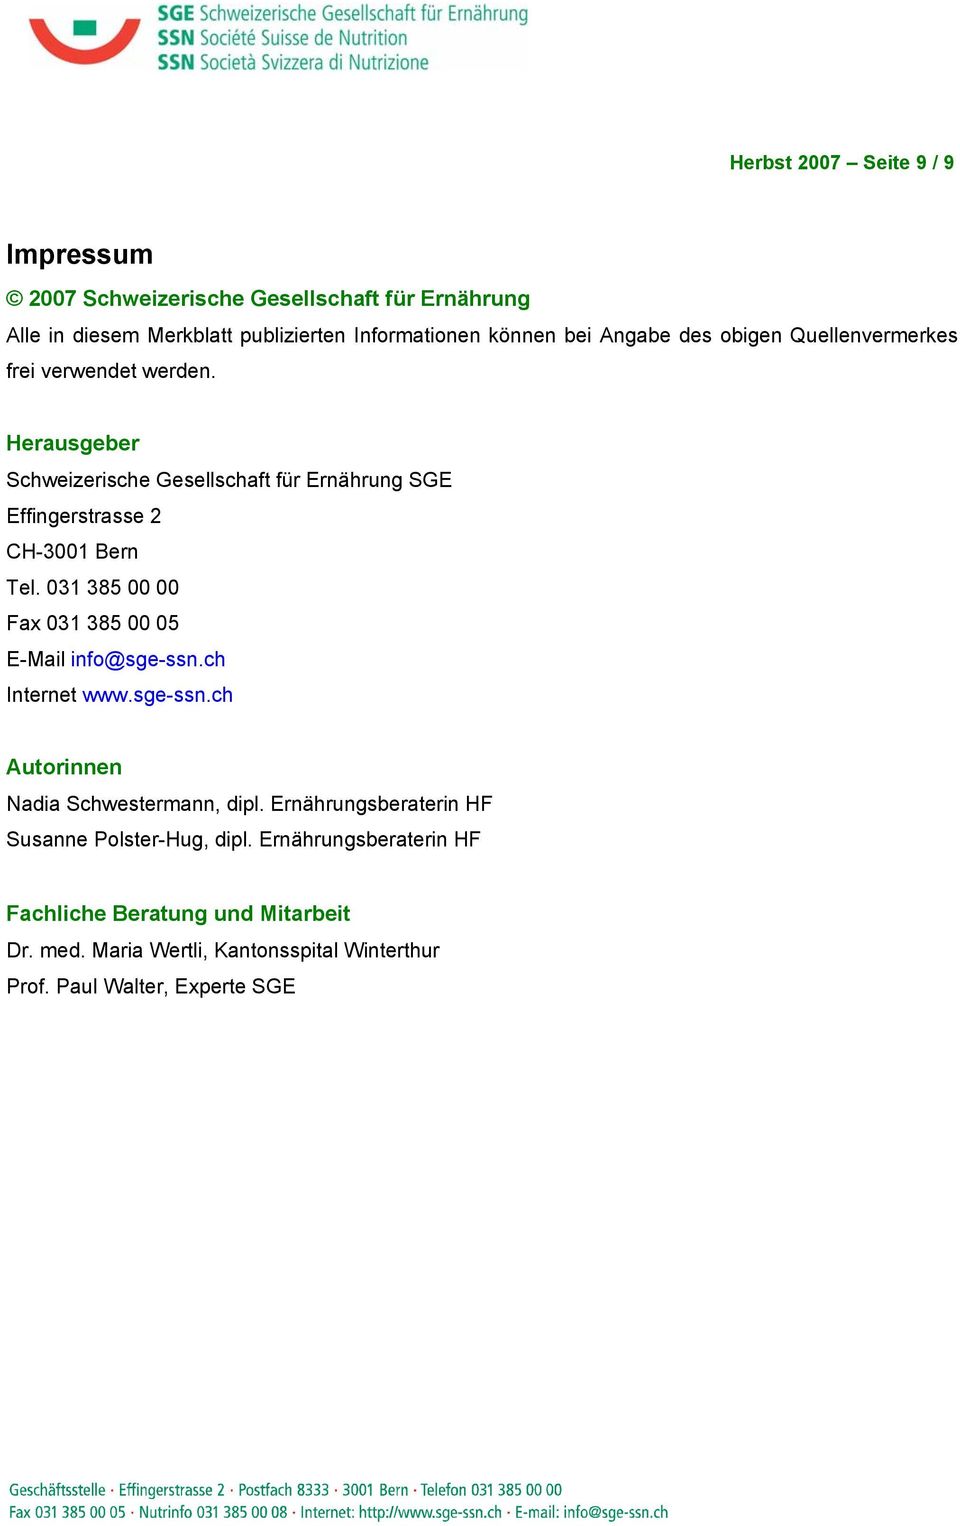 Herausgeber Schweizerische Gesellschaft für Ernährung SGE Effingerstrasse 2 CH-3001 Bern Tel. 031 385 00 00 Fax 031 385 00 05 E-Mail info@sge-ssn.